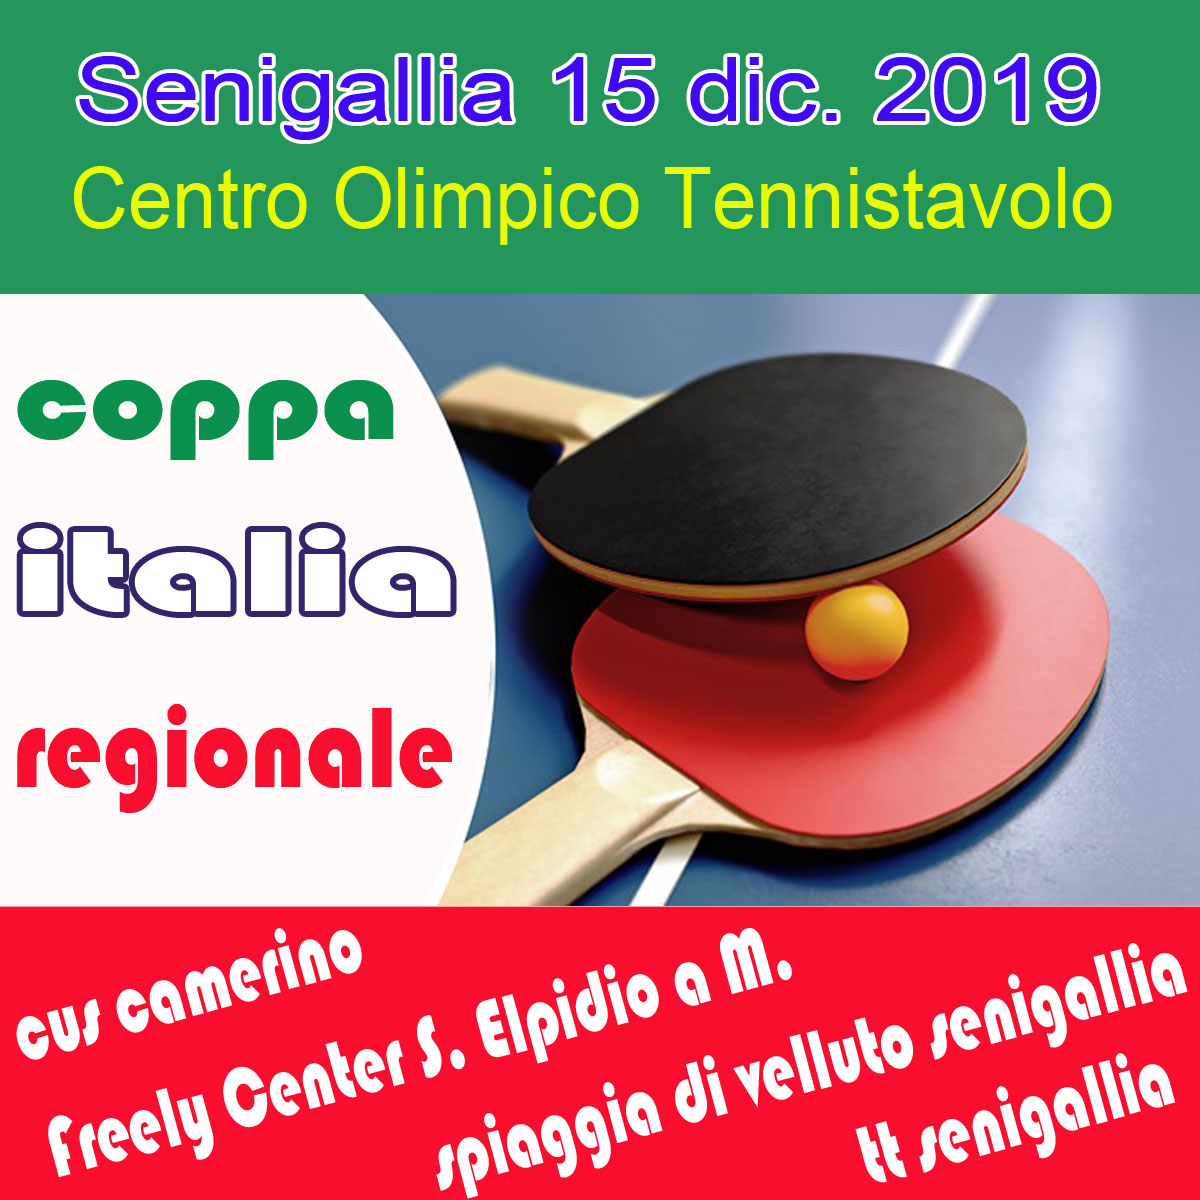 Coppa italia regionale 15.12.19